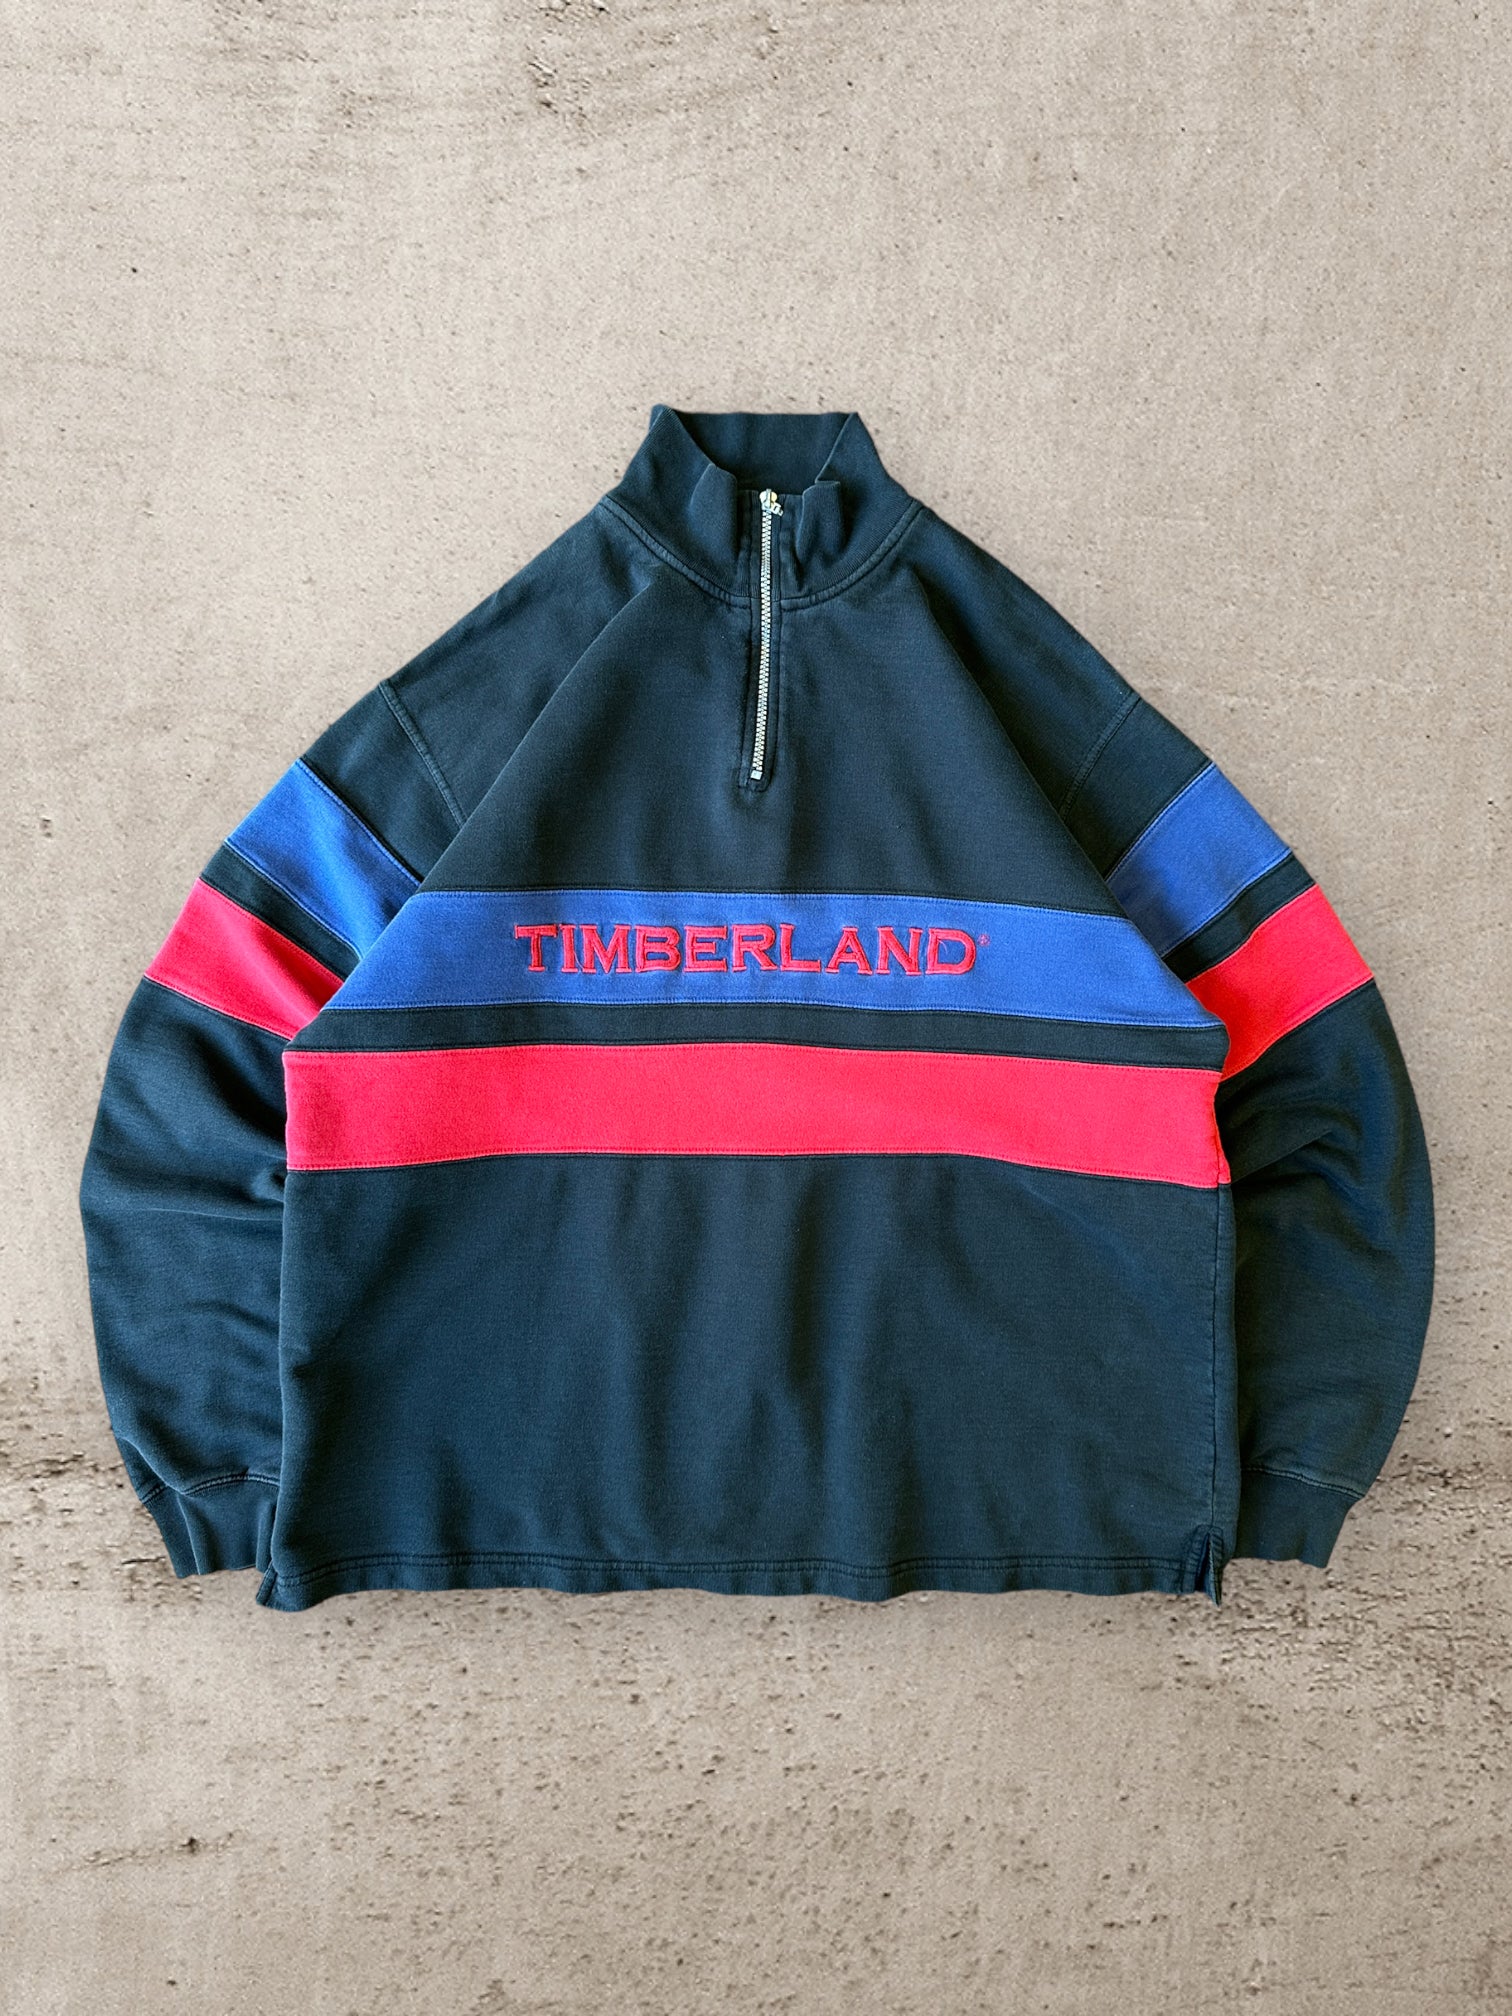 90s Timberland 1/4 Zip Colorblock Sweatshirt - XL